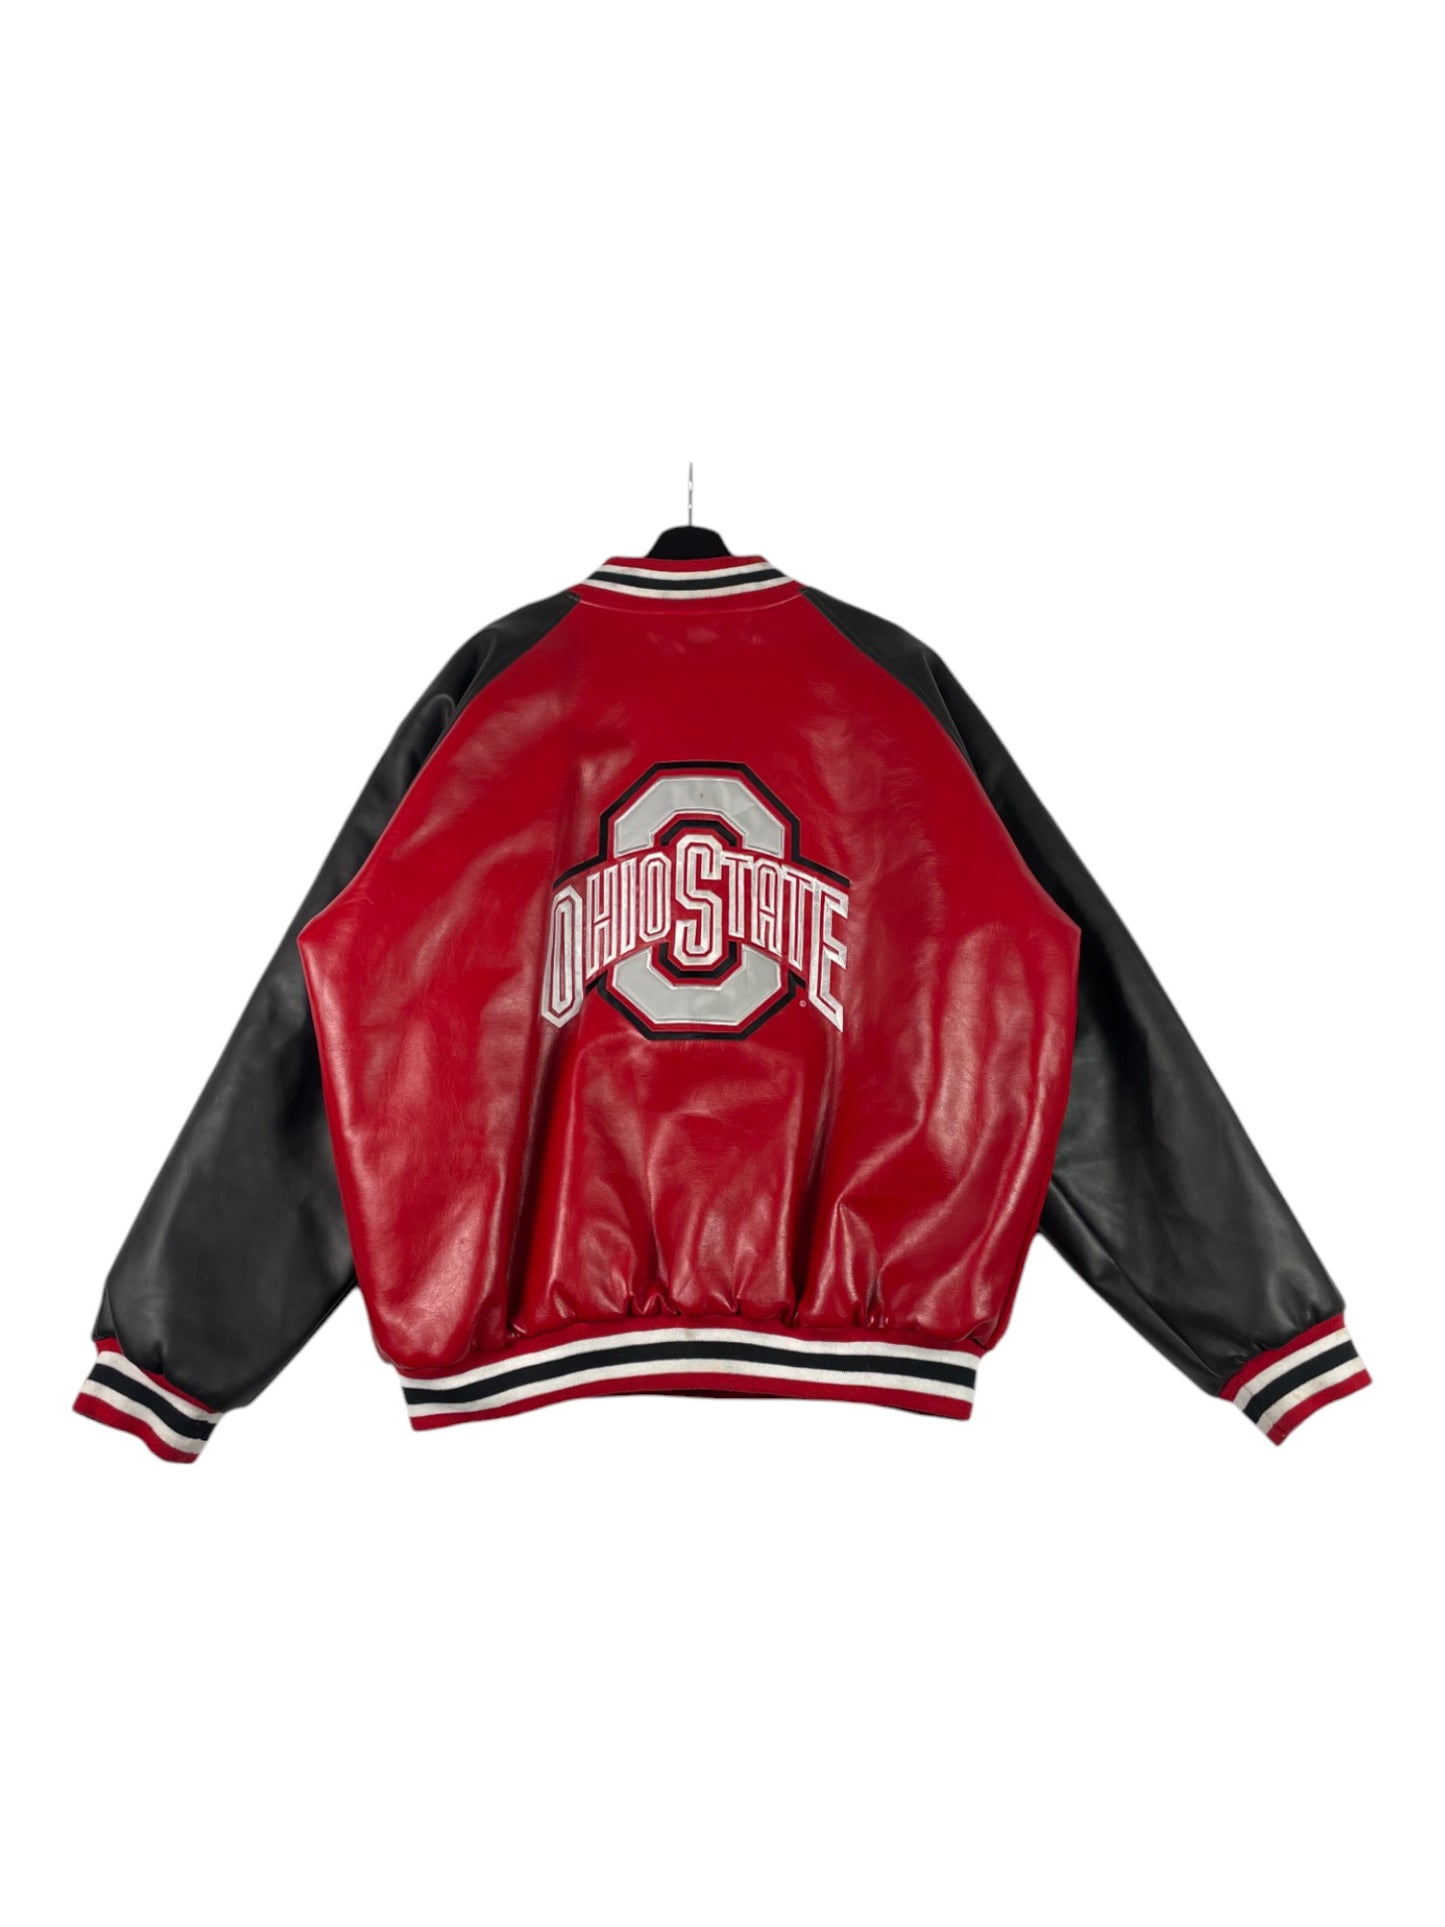 Ohio State Varsity Jacket